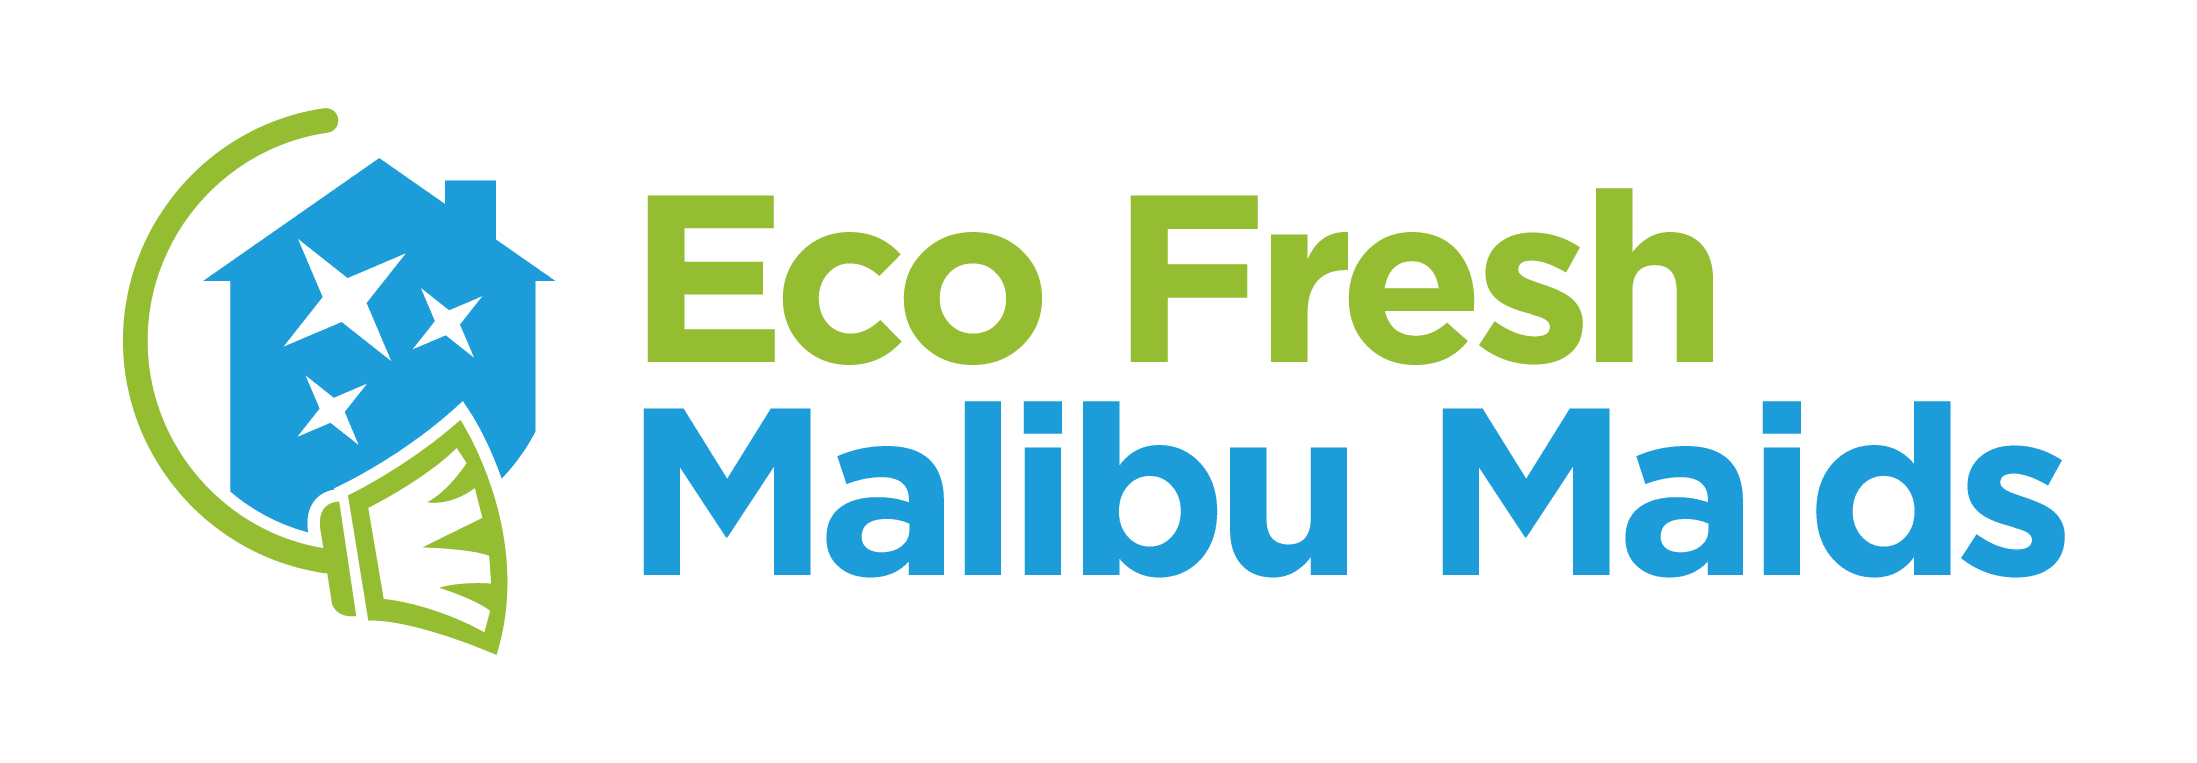 Eco Fresh Malibu Maids